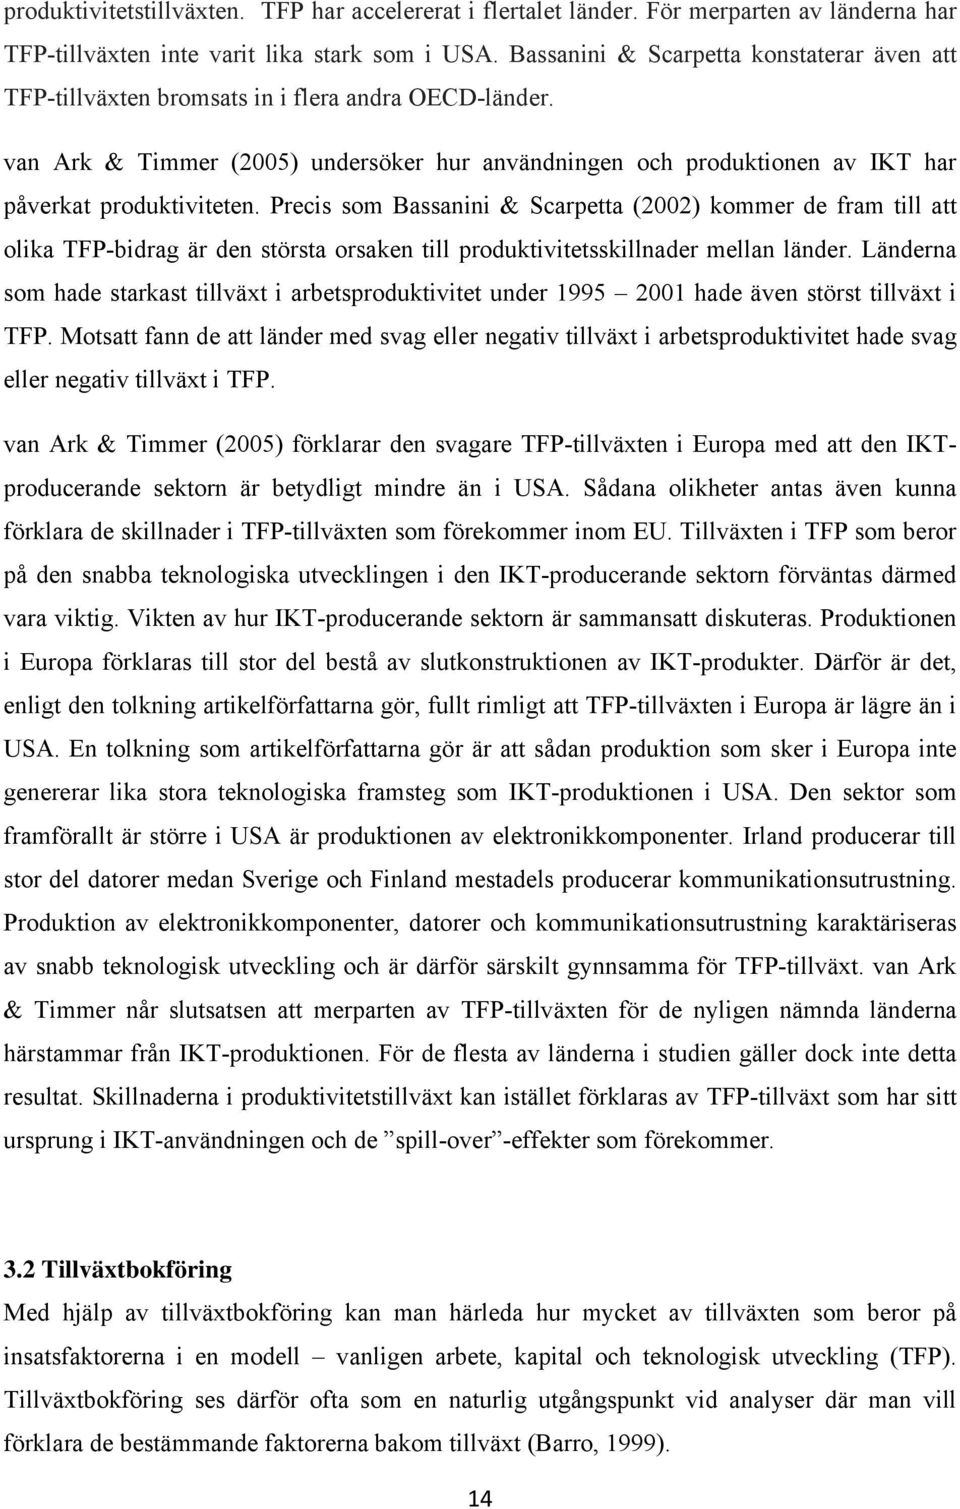 van Ark & Timmer (2005) undersöker hur användningen och produktionen av IKT har påverkat produktiviteten.